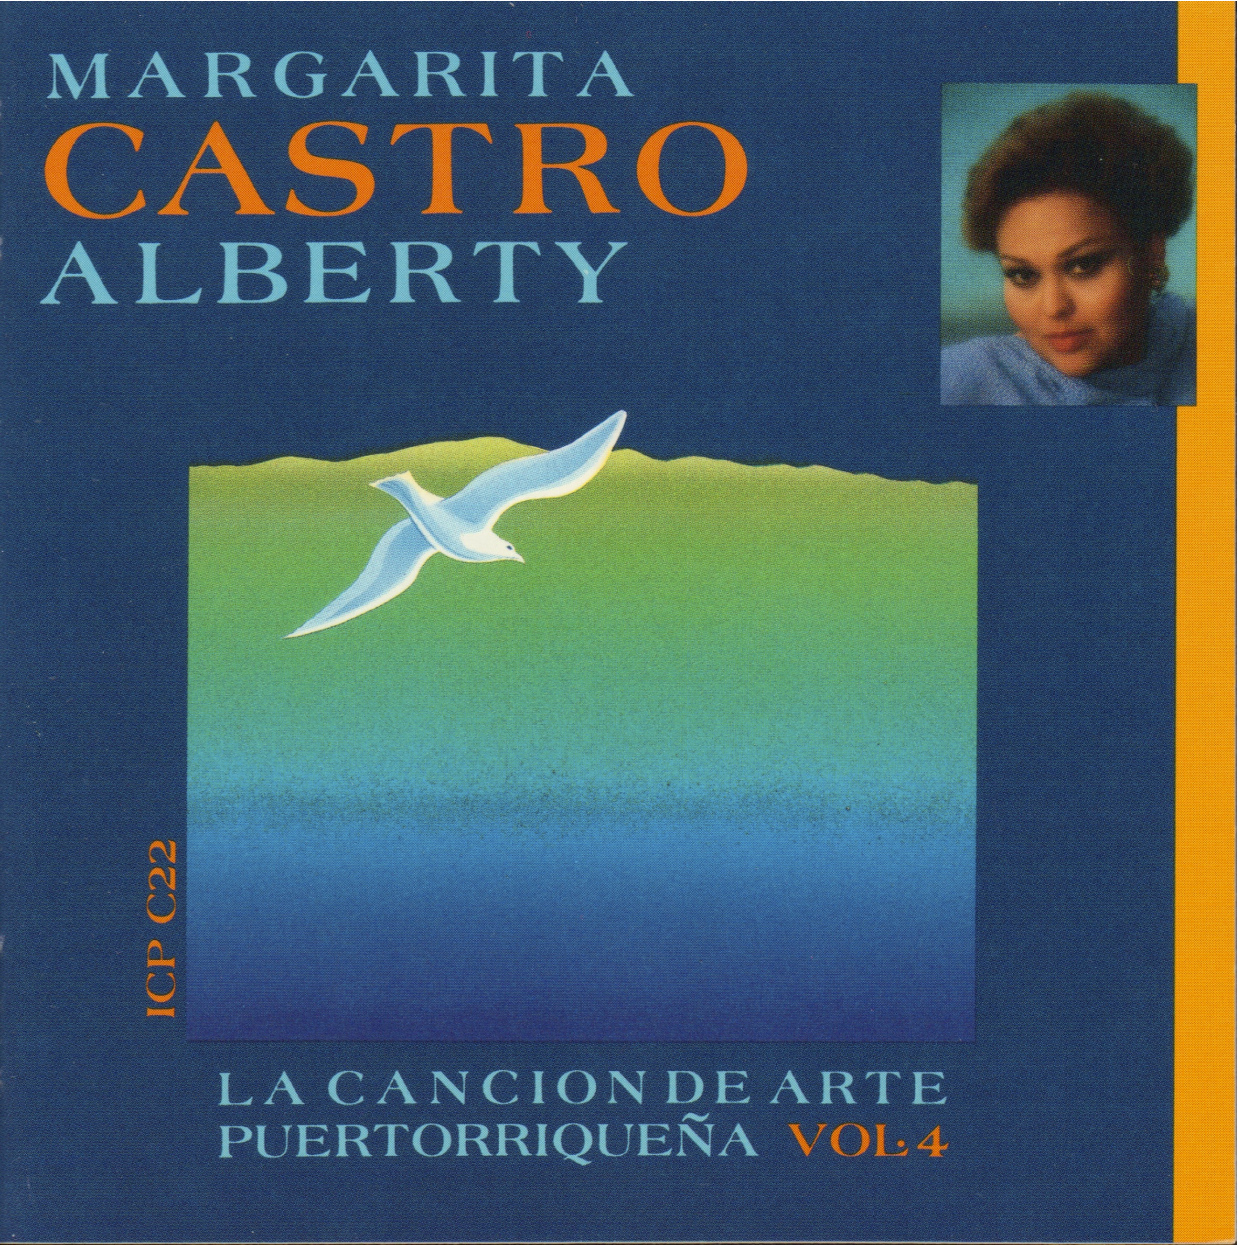 La Canción de Arte Puertorriqueña Vol. 4 - Interpreta Margarita Castro Alberty